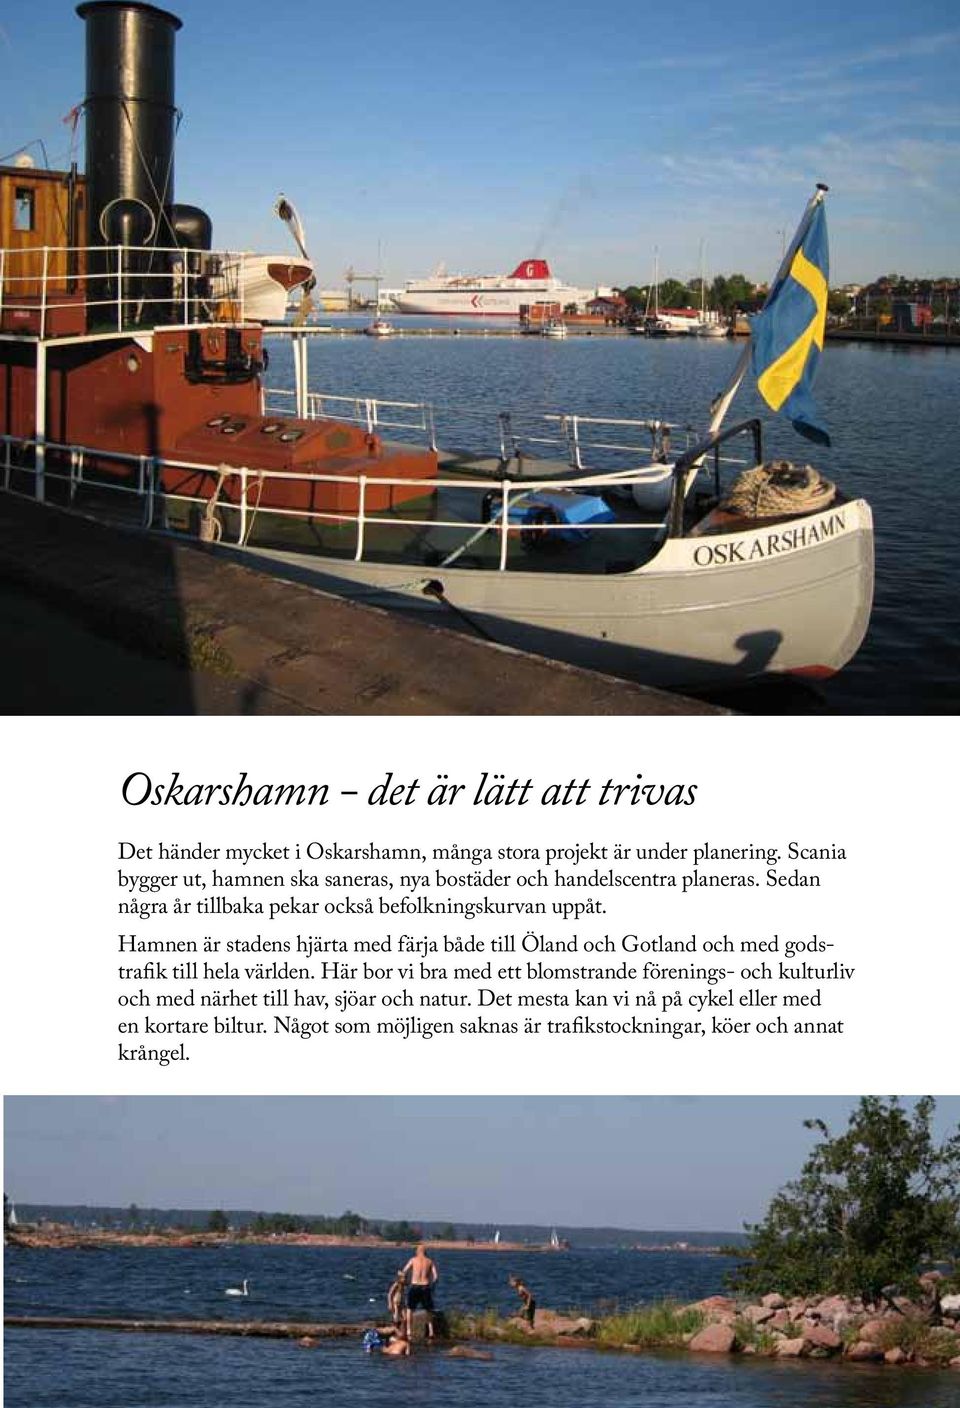 Hamnen är stadens hjärta med färja både till Öland och Gotland och med godstrafik till hela världen.